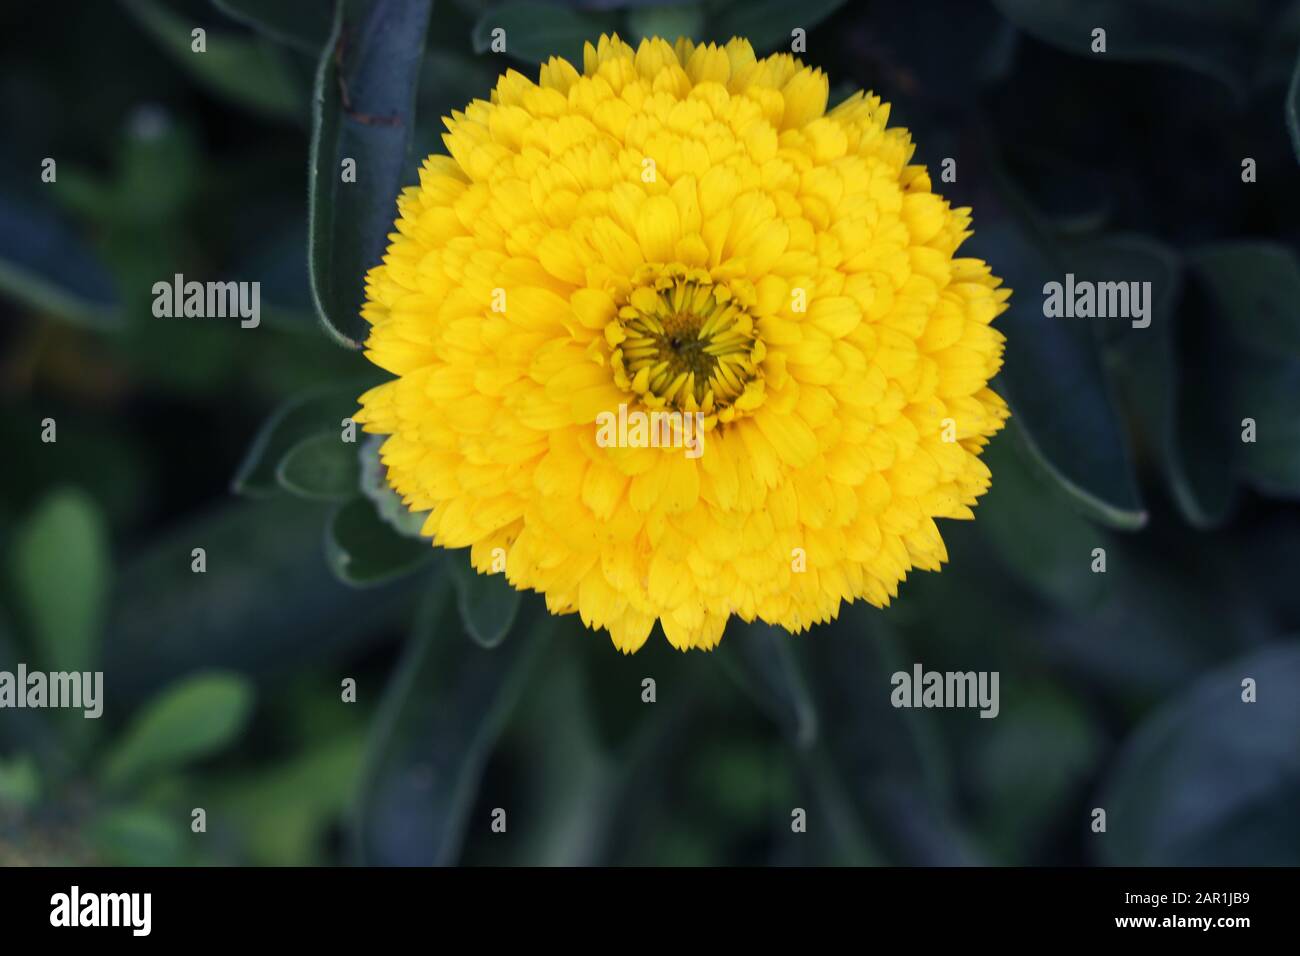 Topf Marigold, Calendula officinalis schließen sich. Englische Marigold Flower.English Marigold Flowers in voller Blüte.Orange & gelbe Blume auf Blatthintergrund Stockfoto